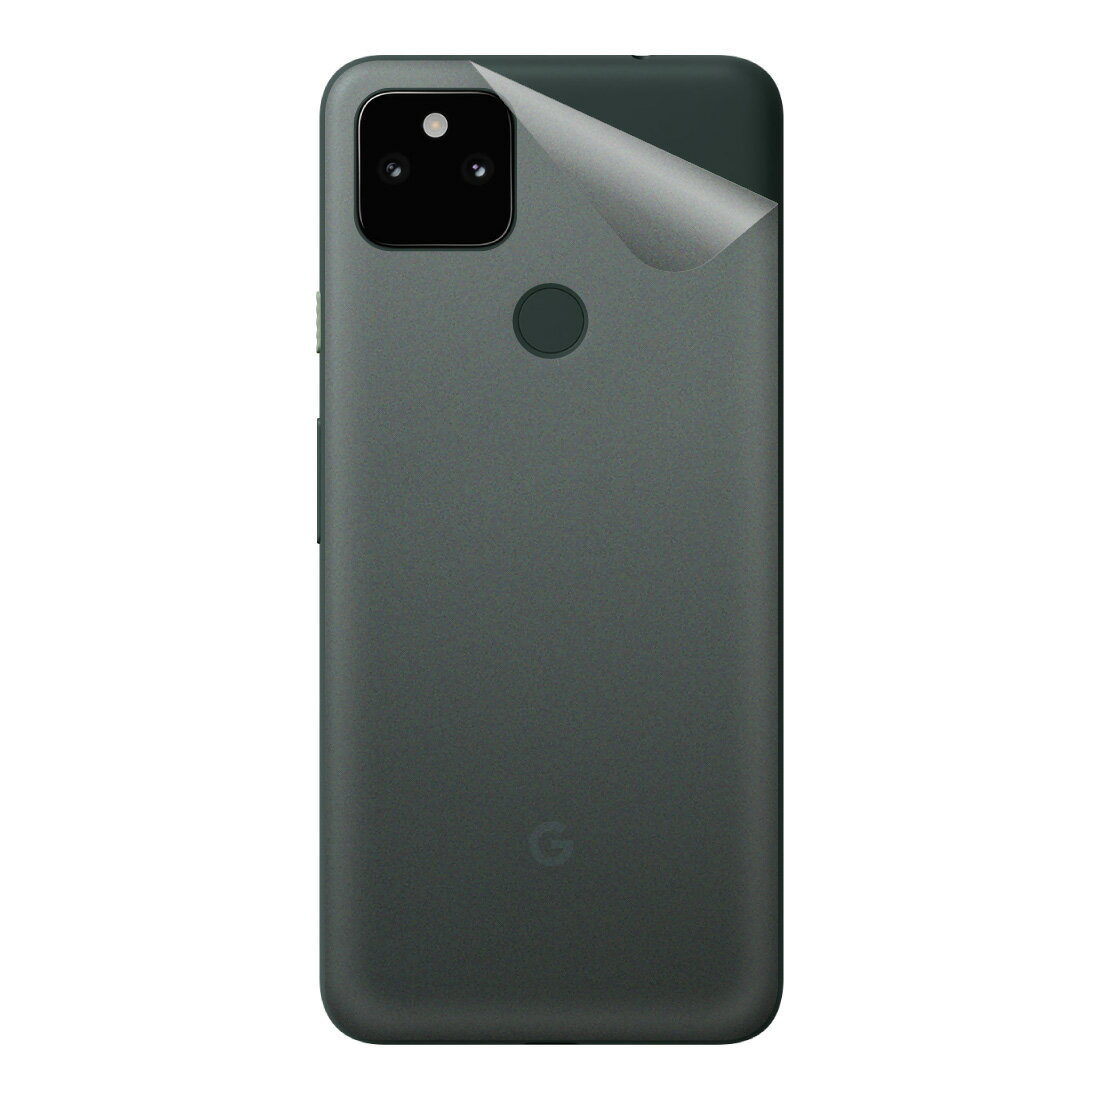 スキンシール Google Pixel 5a (5G) 【透明・すりガラス調】 日本製 自社製造直販